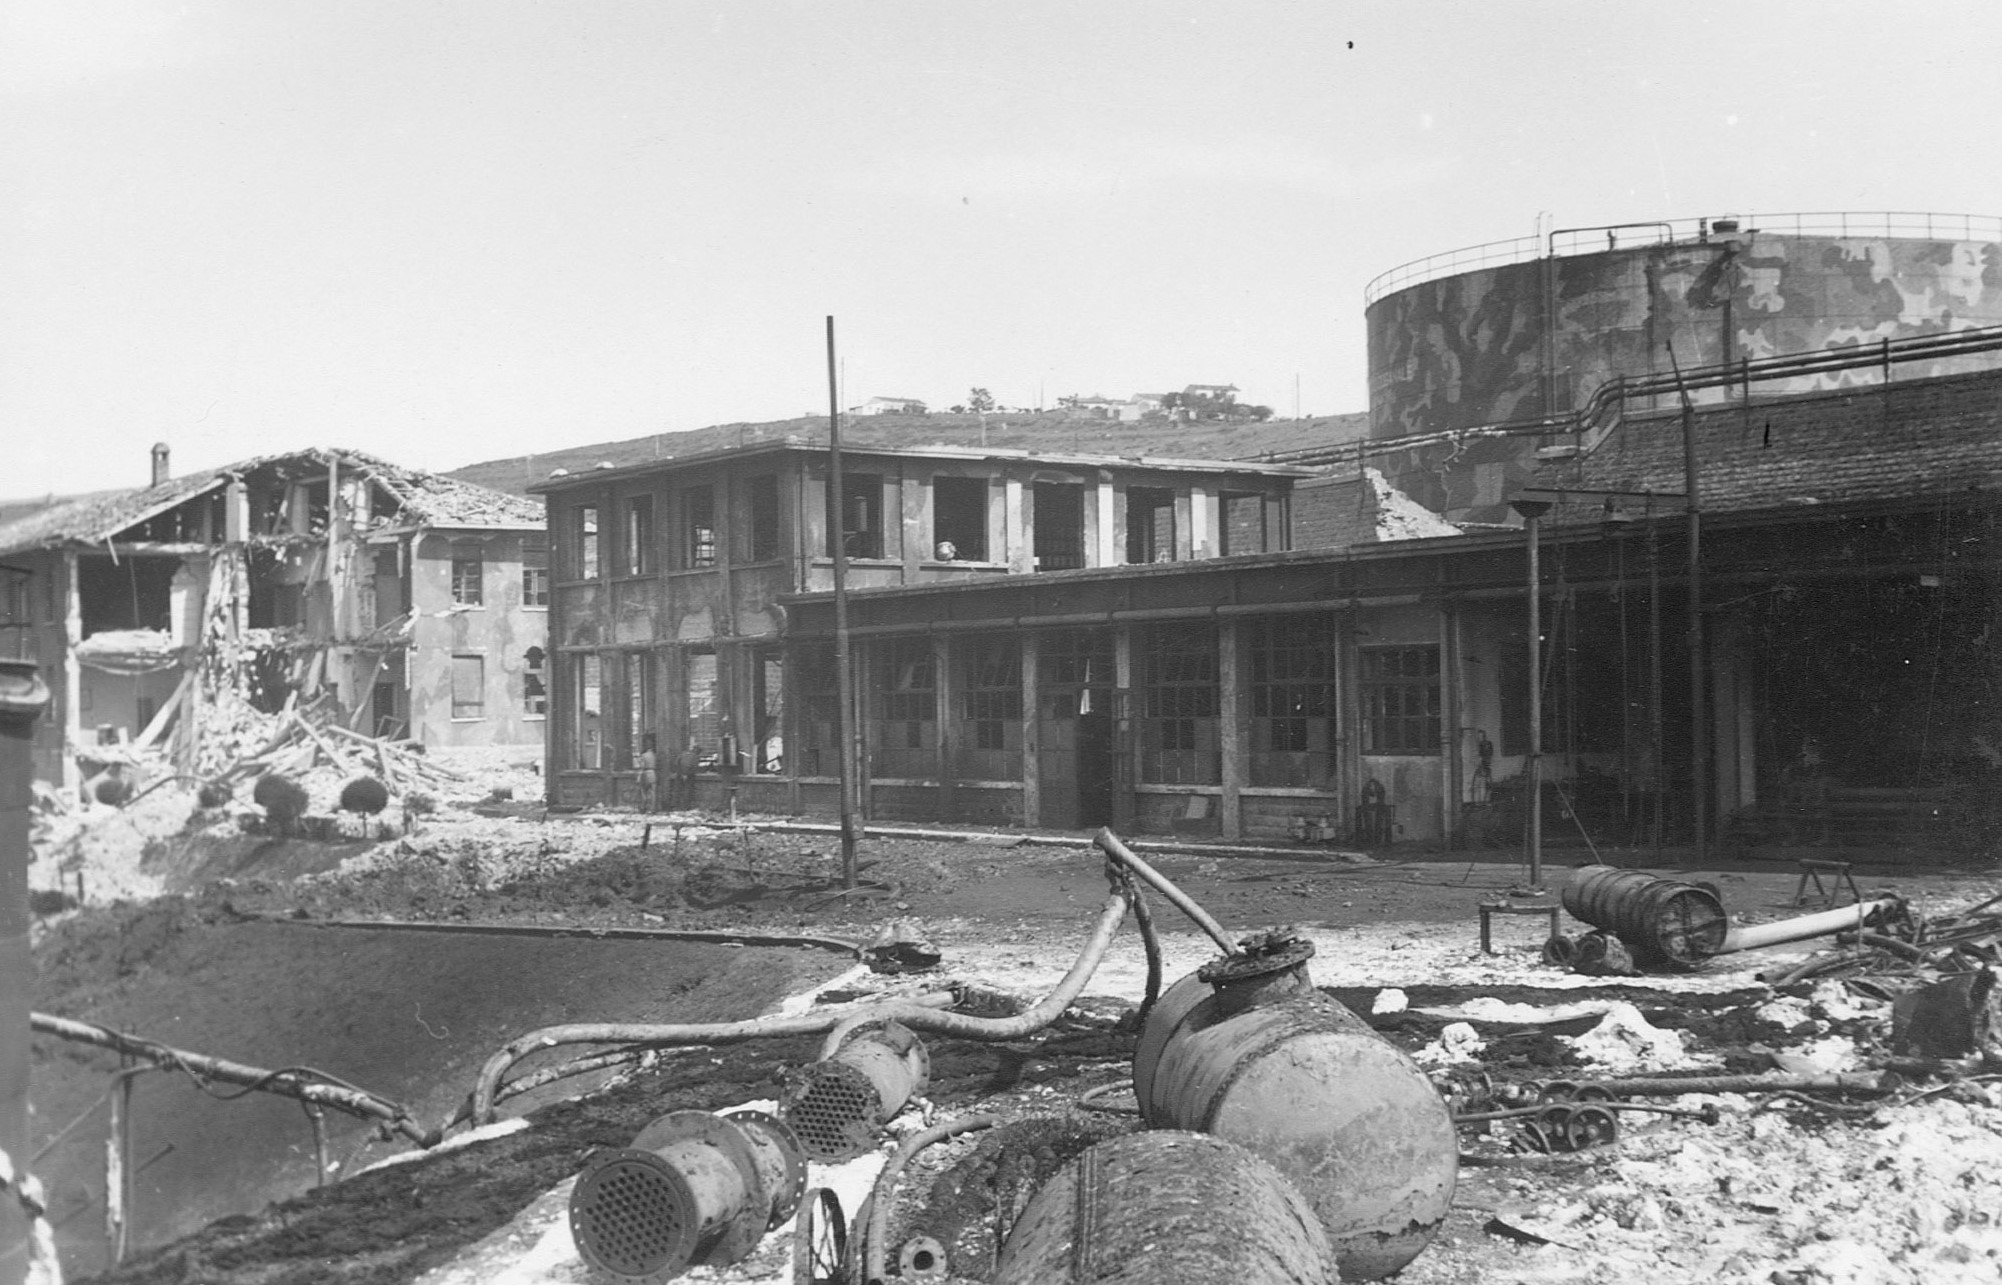 Danni da bombardamento alla Raffineria Aquila, 1944, Trieste.
(Archivio di Stato di Trieste, Archivio Aquila S.p.A., Archivio fotografico).